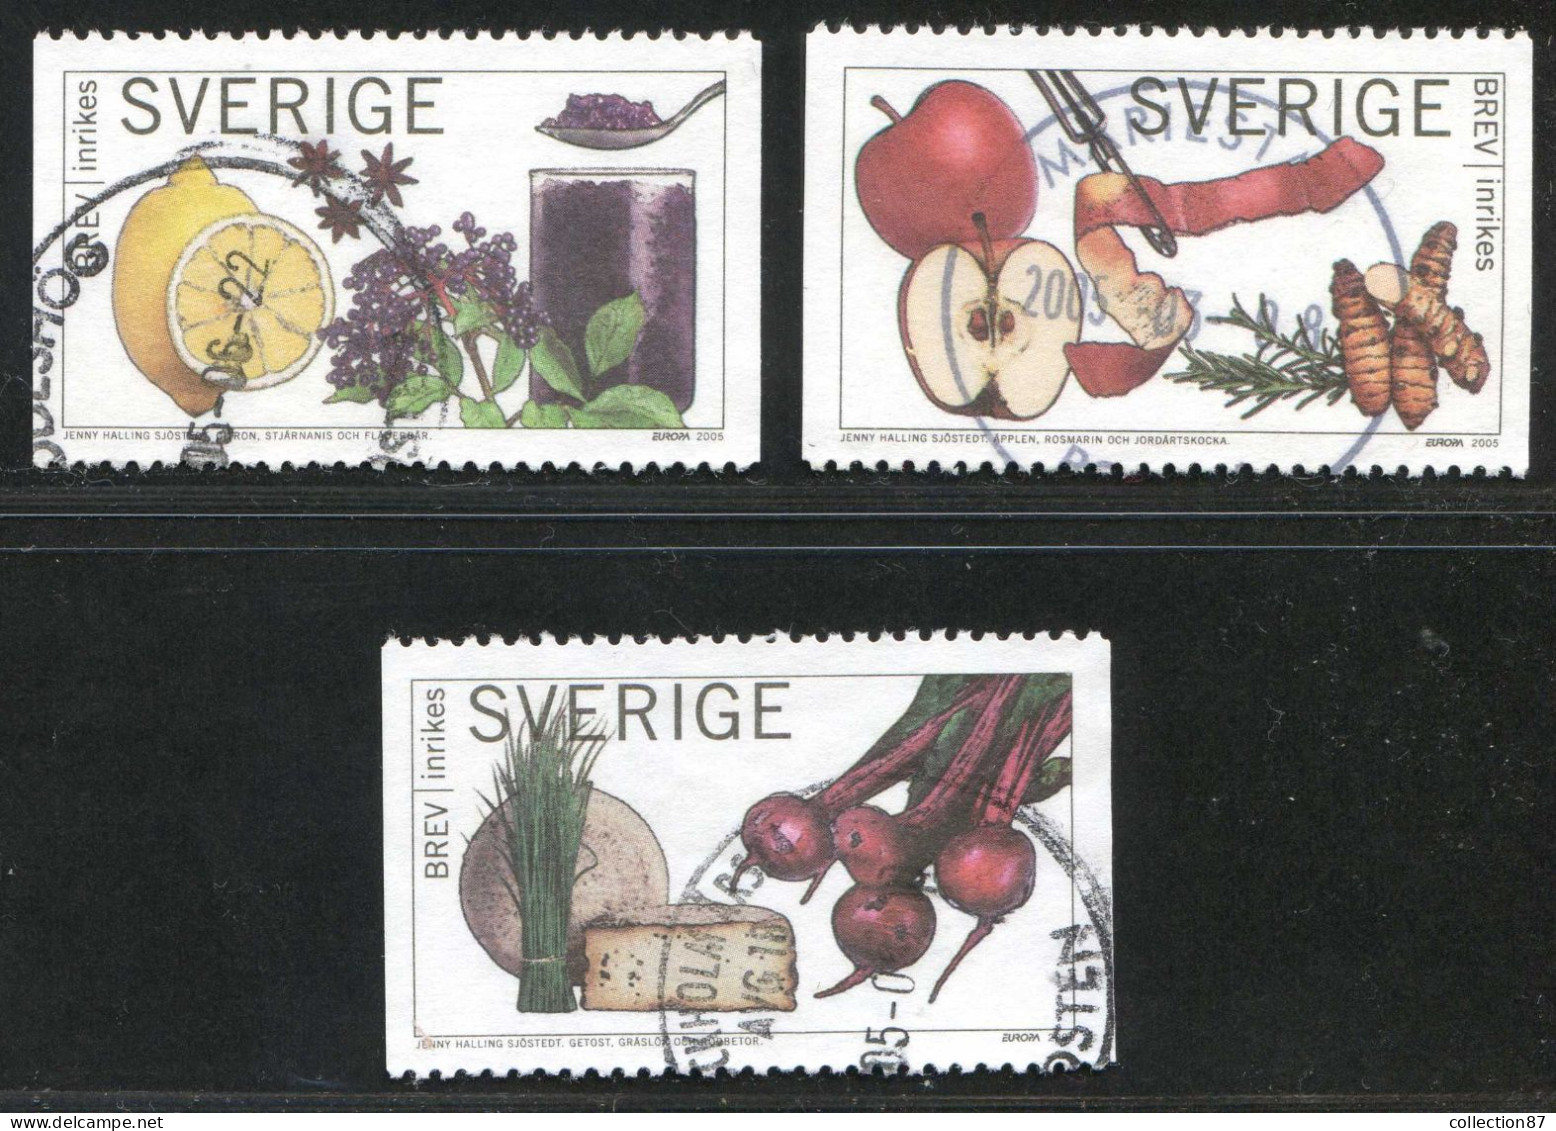 Réf 77 < SUEDE Année 2005 < Yvert N° 2446 à 2448 Ø Used < SWEDEN - Europa < Citron Anis Pommes Fromage De Chèvre - Gebraucht